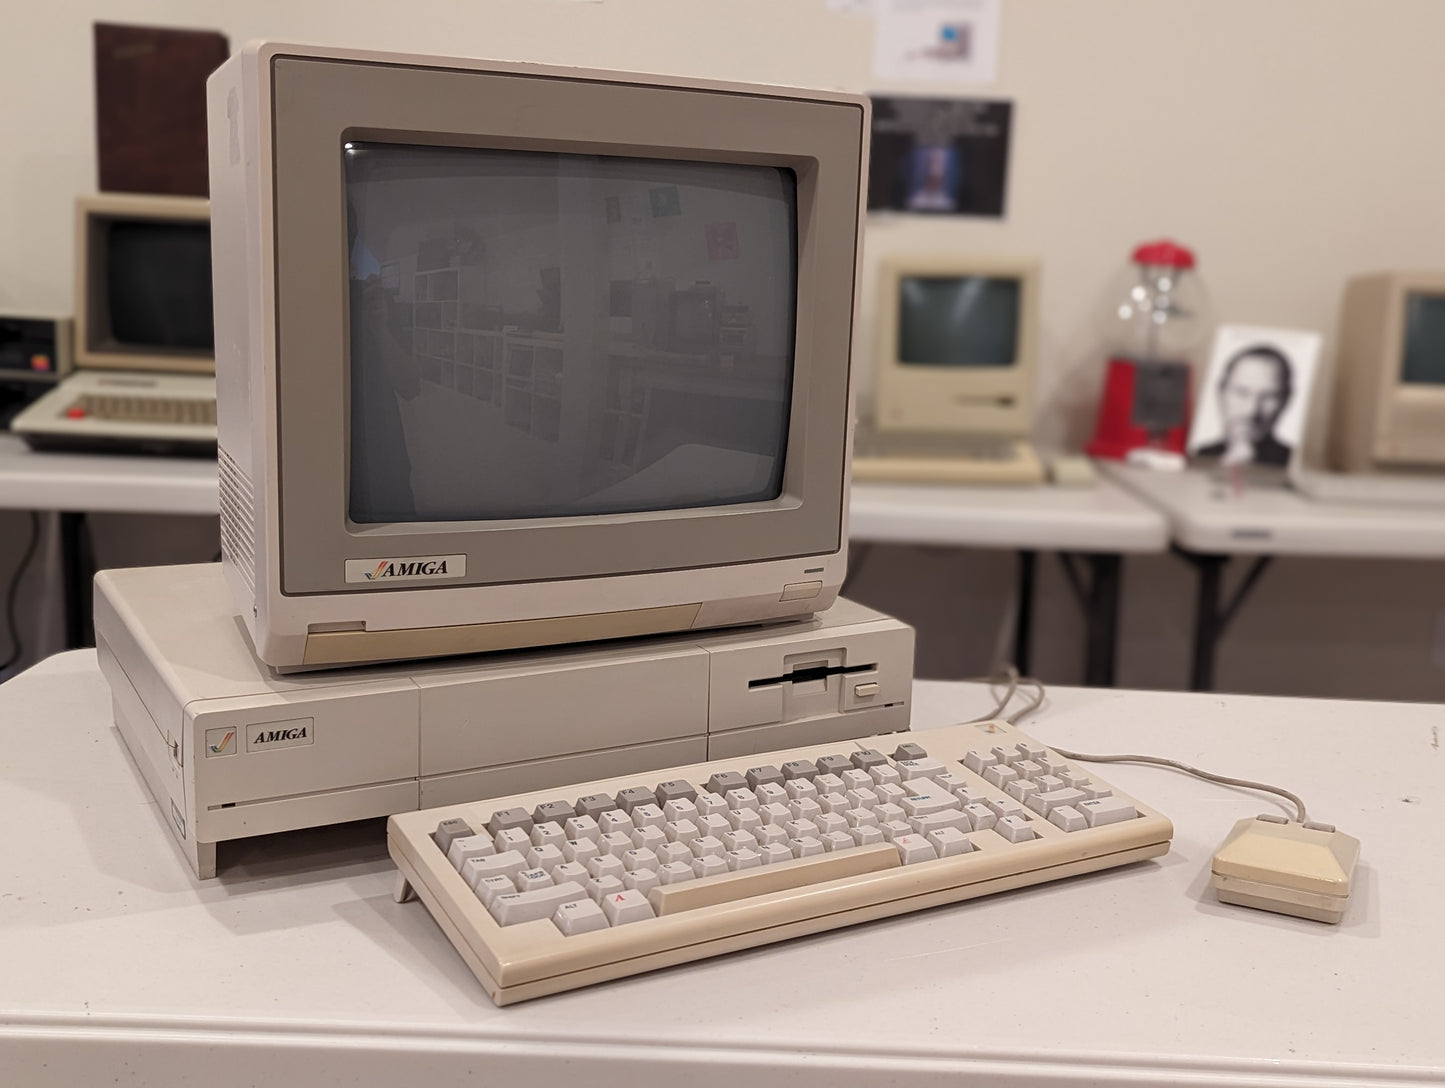 Commodore Amiga 1000 (1985-1987)